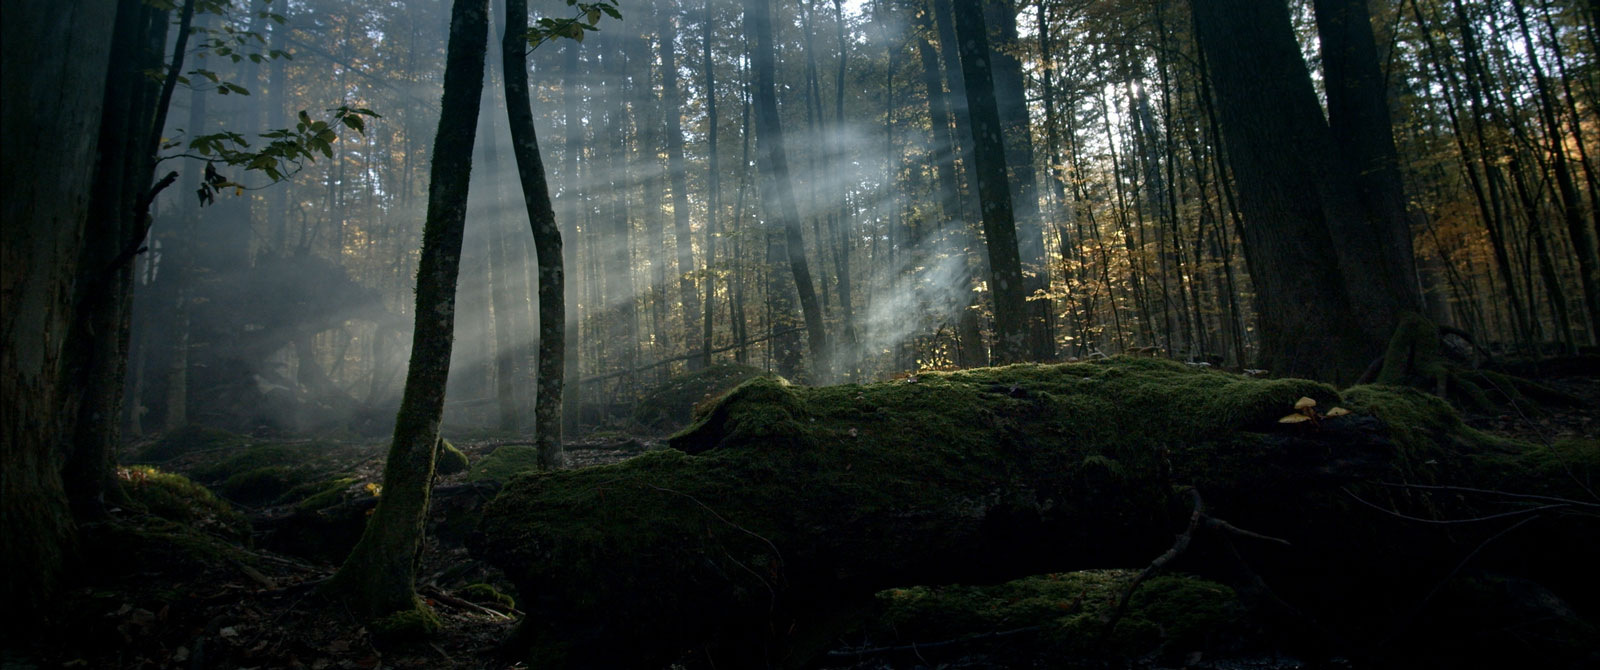 Dokumentarfilm 'Der Wilde Wald' - Filmstill: Lichtdurchfluteter Urwald